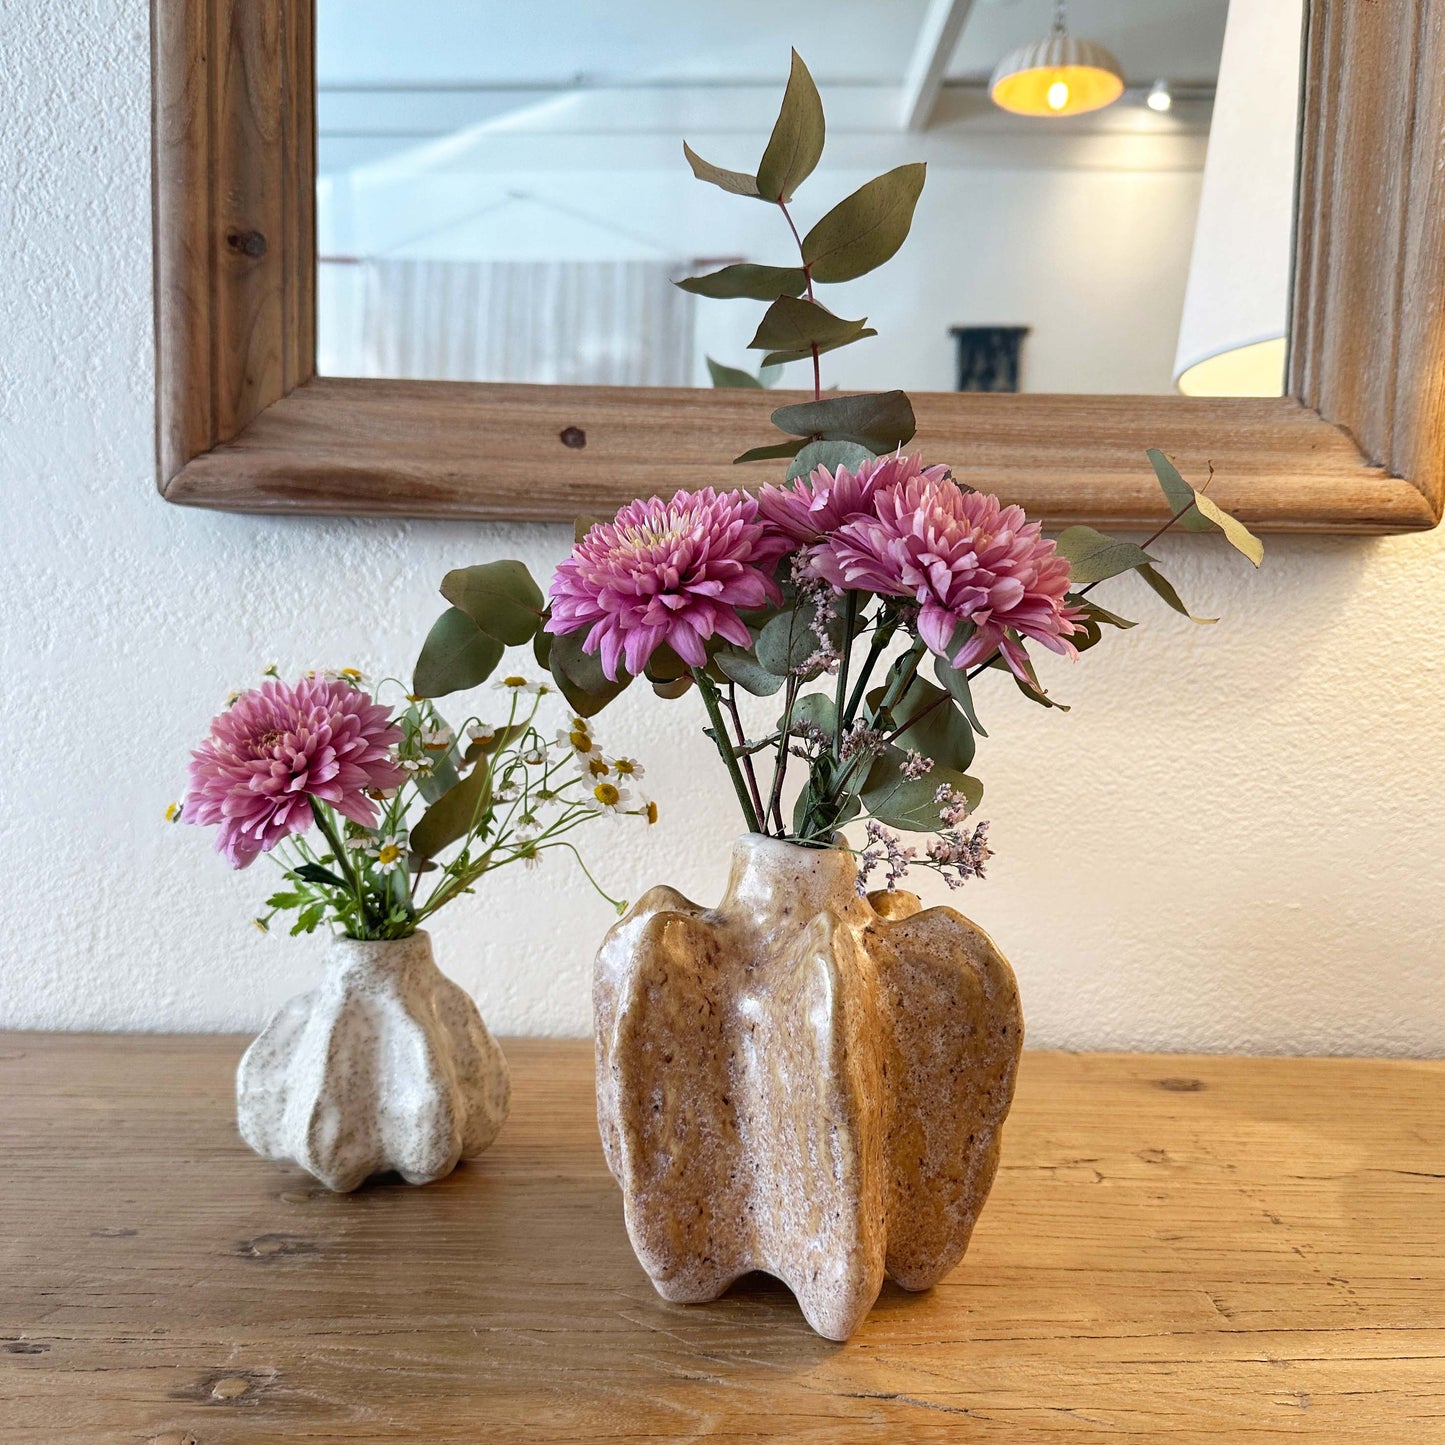 Organic shaped stoneware vases with fresh flowers.